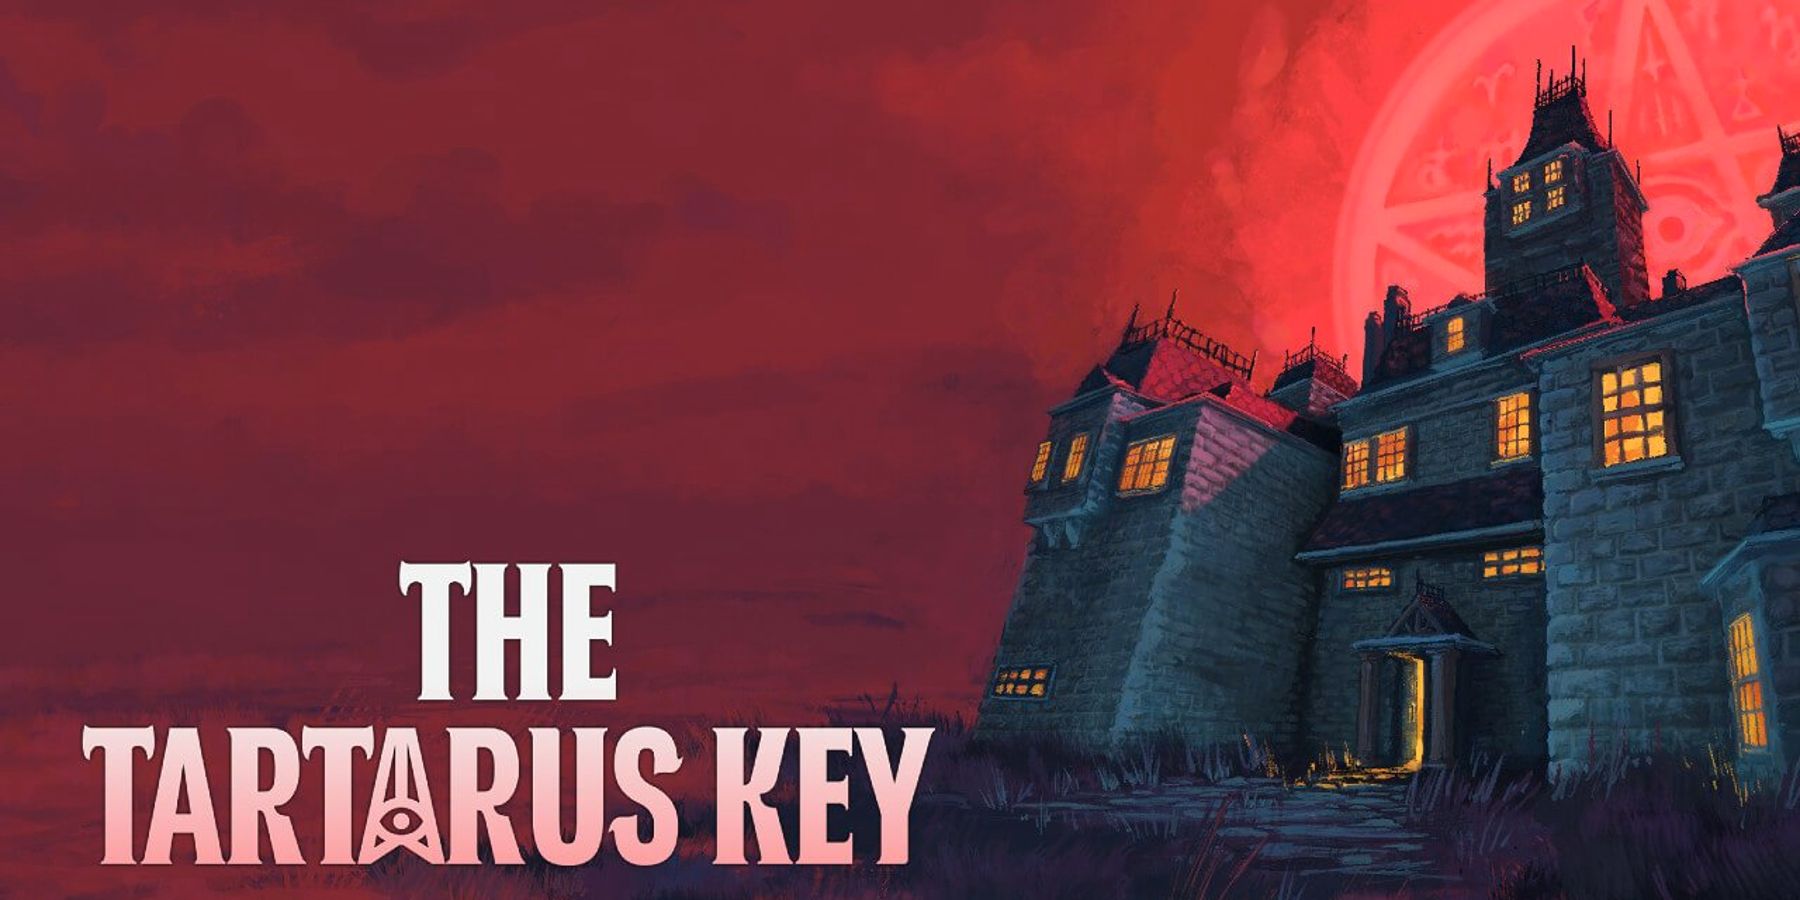 Игра ужасов в стиле PS1 The Tartarus Key анонсирована для Nintendo Switch